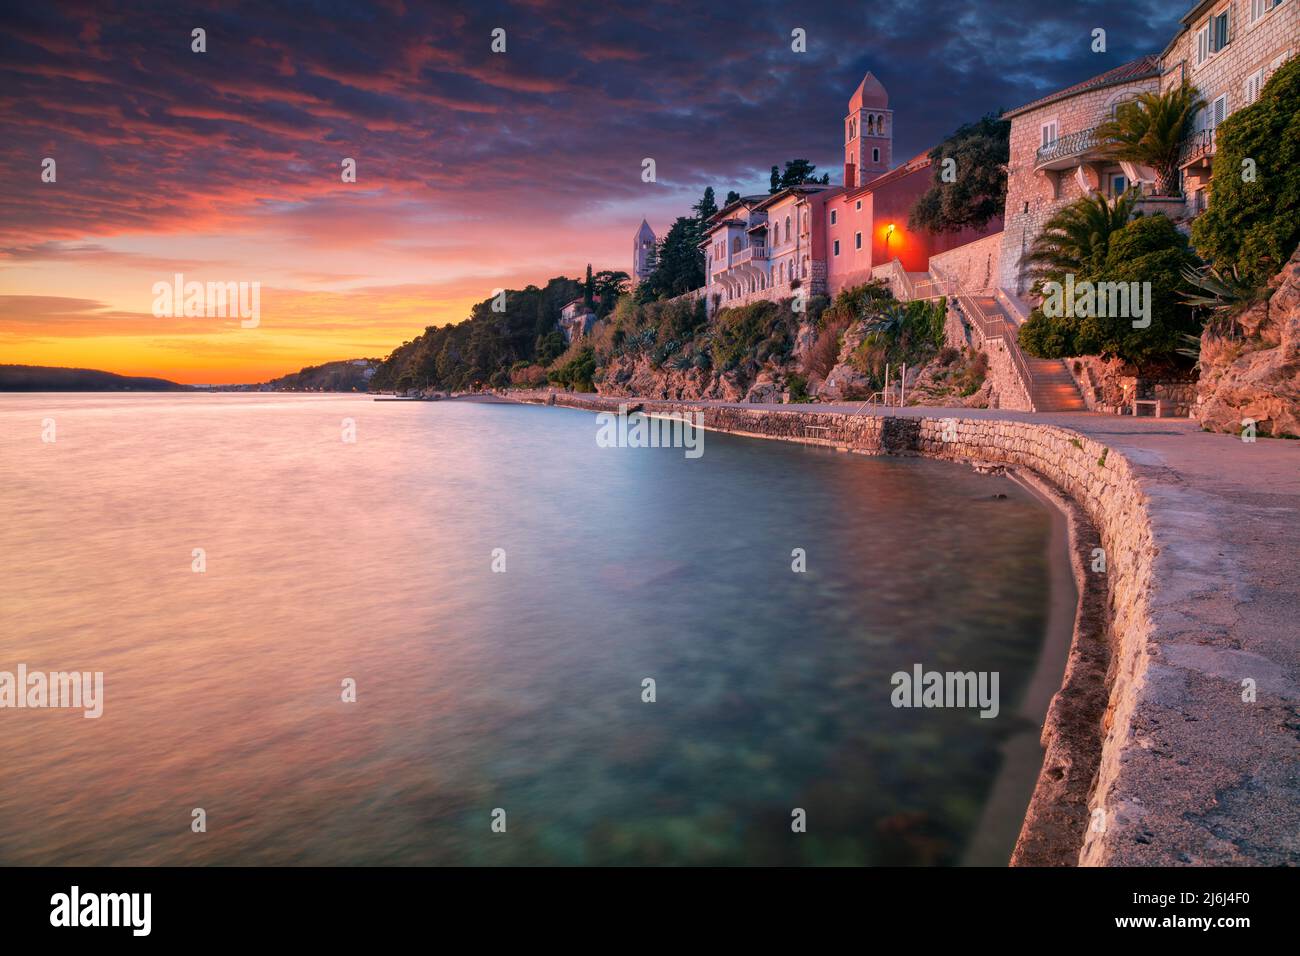 Rab, isola di Rab, Croazia. Immagine del paesaggio urbano dell'iconico villaggio di Rab, Croazia situato sull'isola di Rab al tramonto. Foto Stock